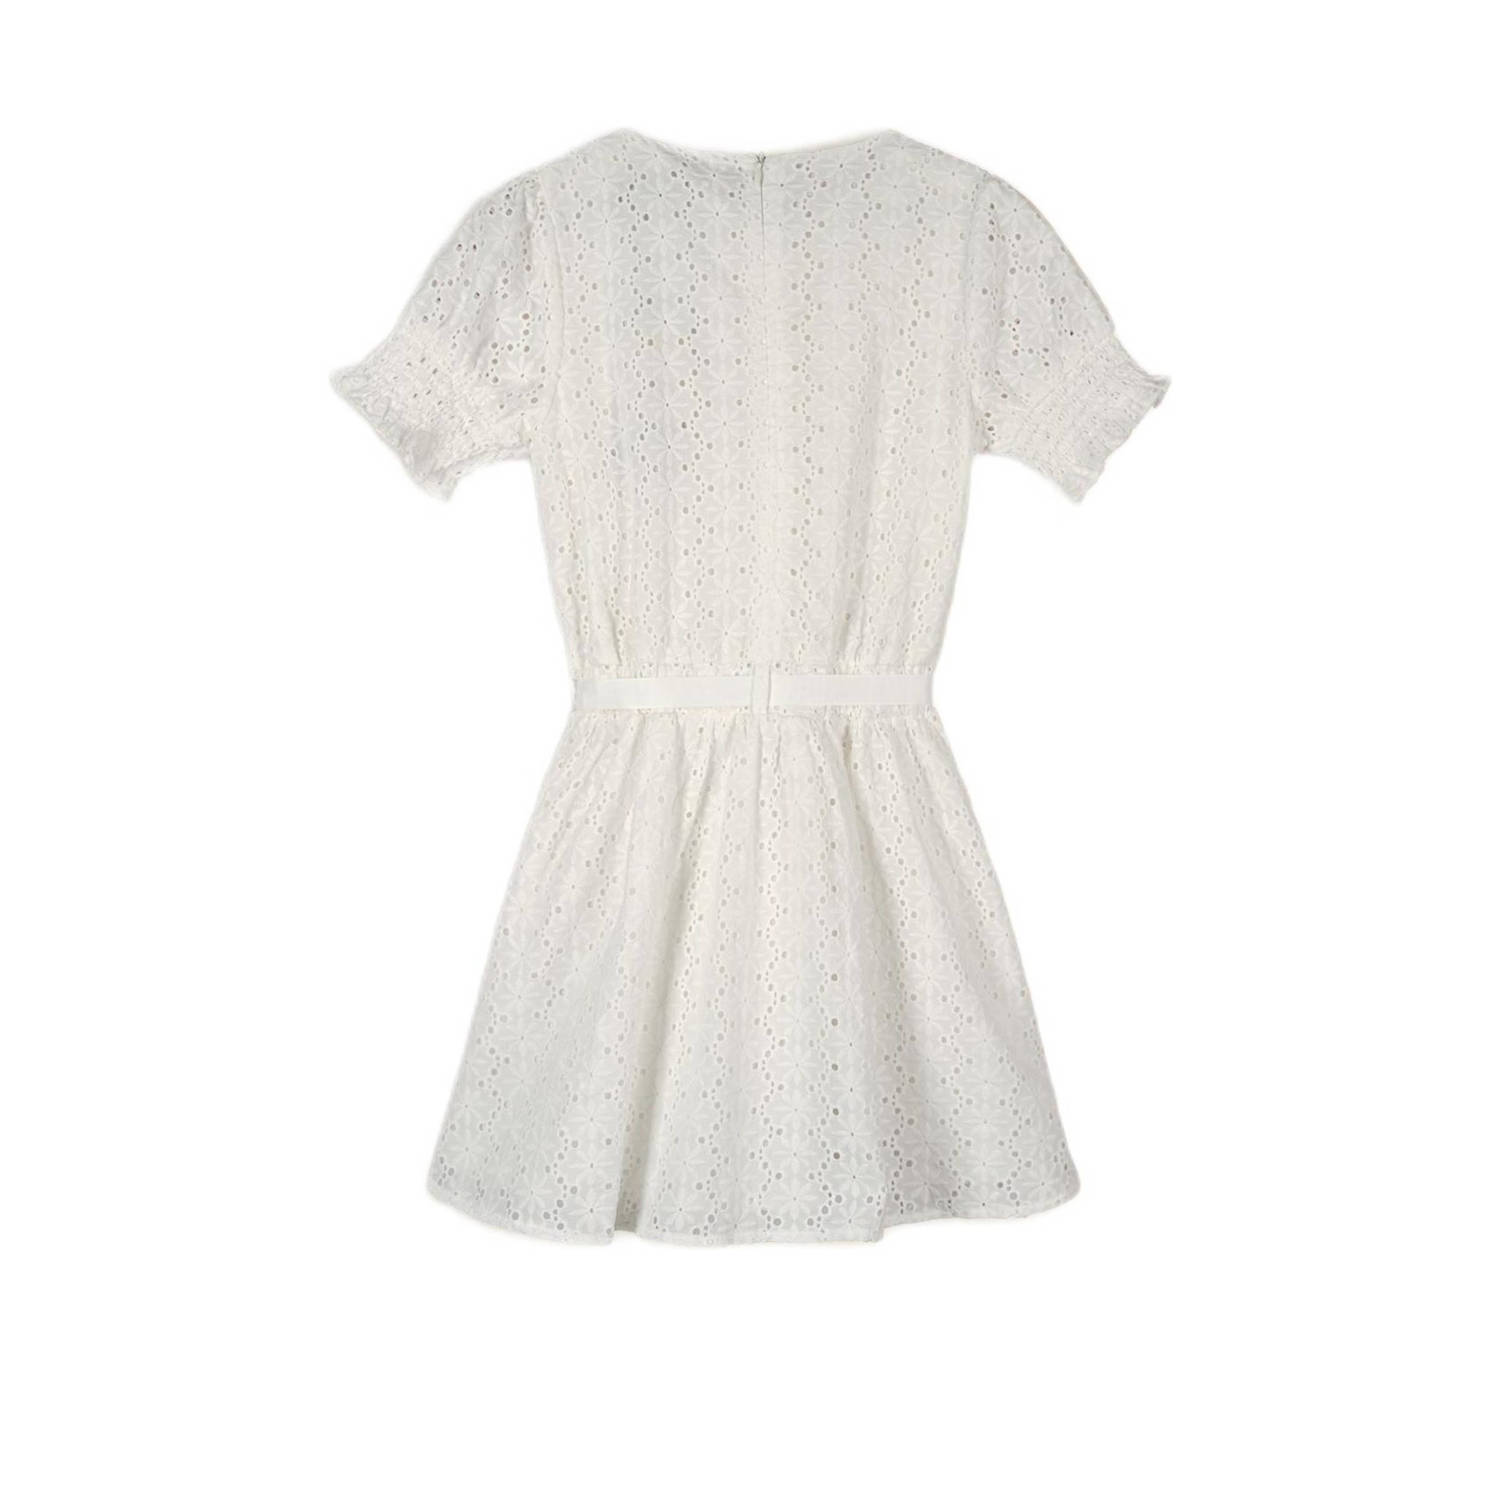 NONO jurk Mirabel met textuur wit